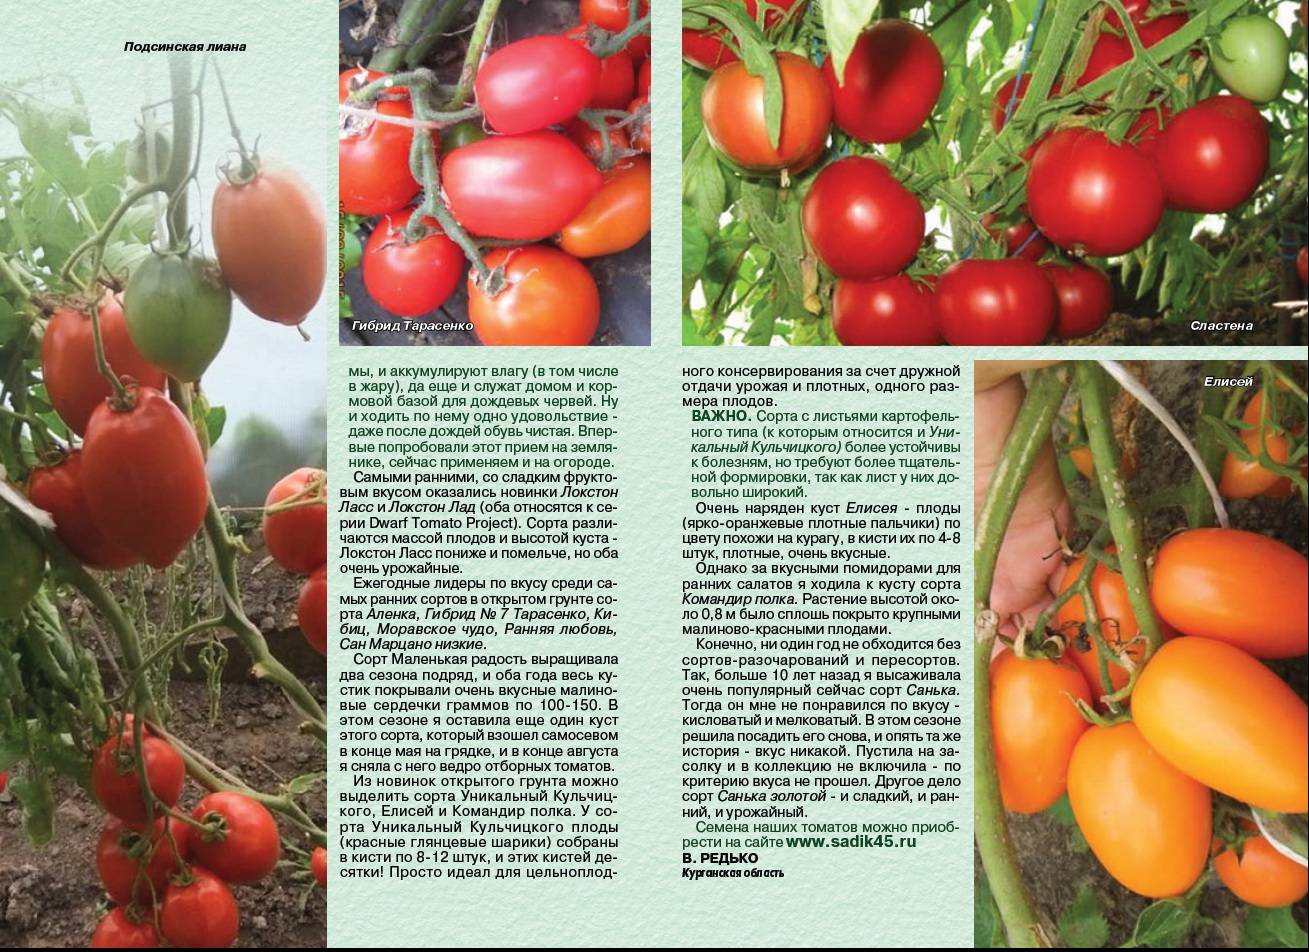 Томат настя сластена f1: характеристика и описание сорта черри с фото, степень урожайности, отзывы овощеводов